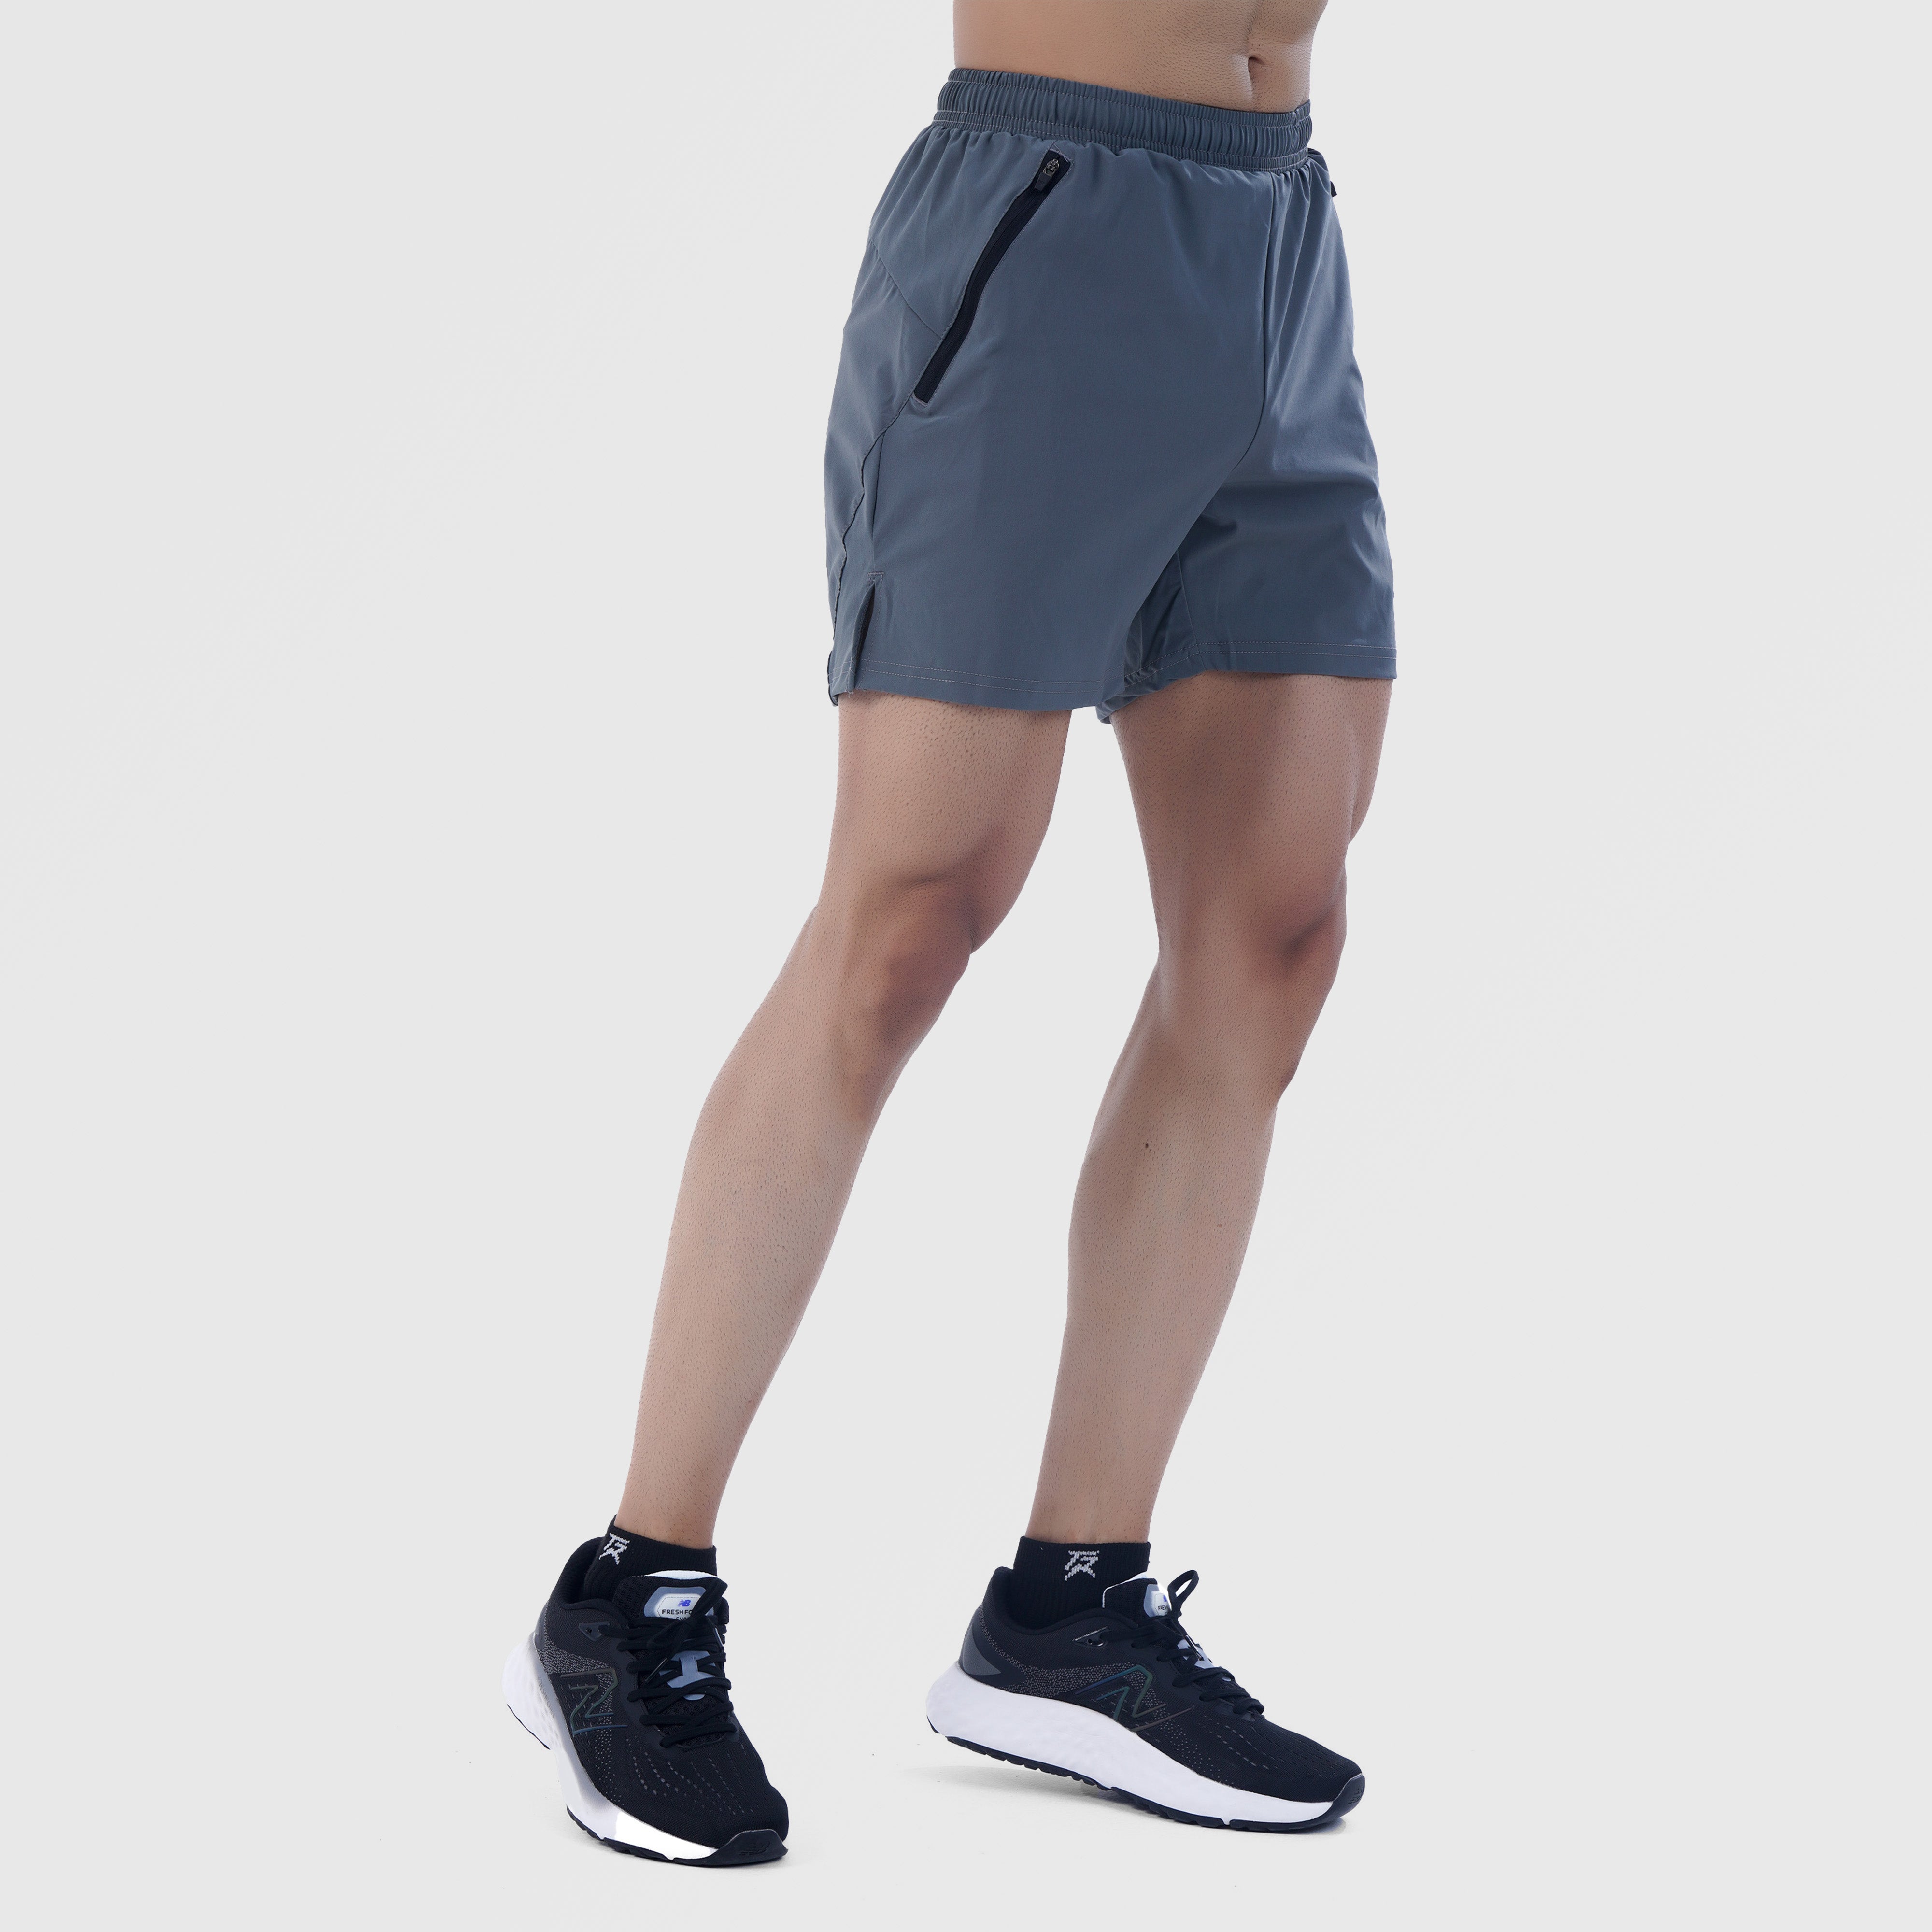 AirFlow Shorts (Grey)